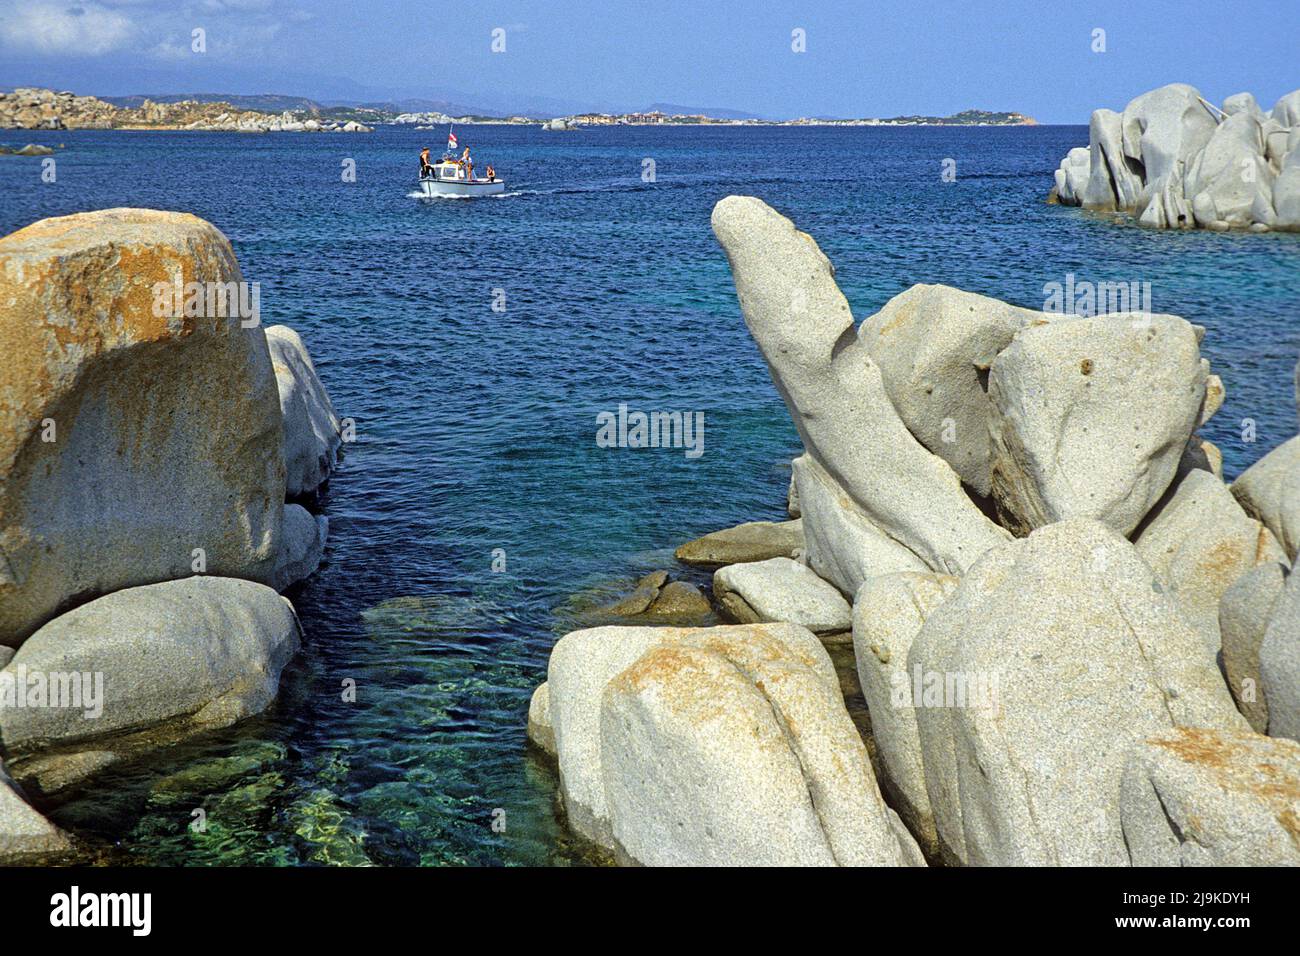 Bateau à moteur dans un port naturel aux îles Lavezzi, groupe de petite île de granit entre la Corse et la Sardaigne, la Corse, la France, la Méditerranée, l'Europe Banque D'Images